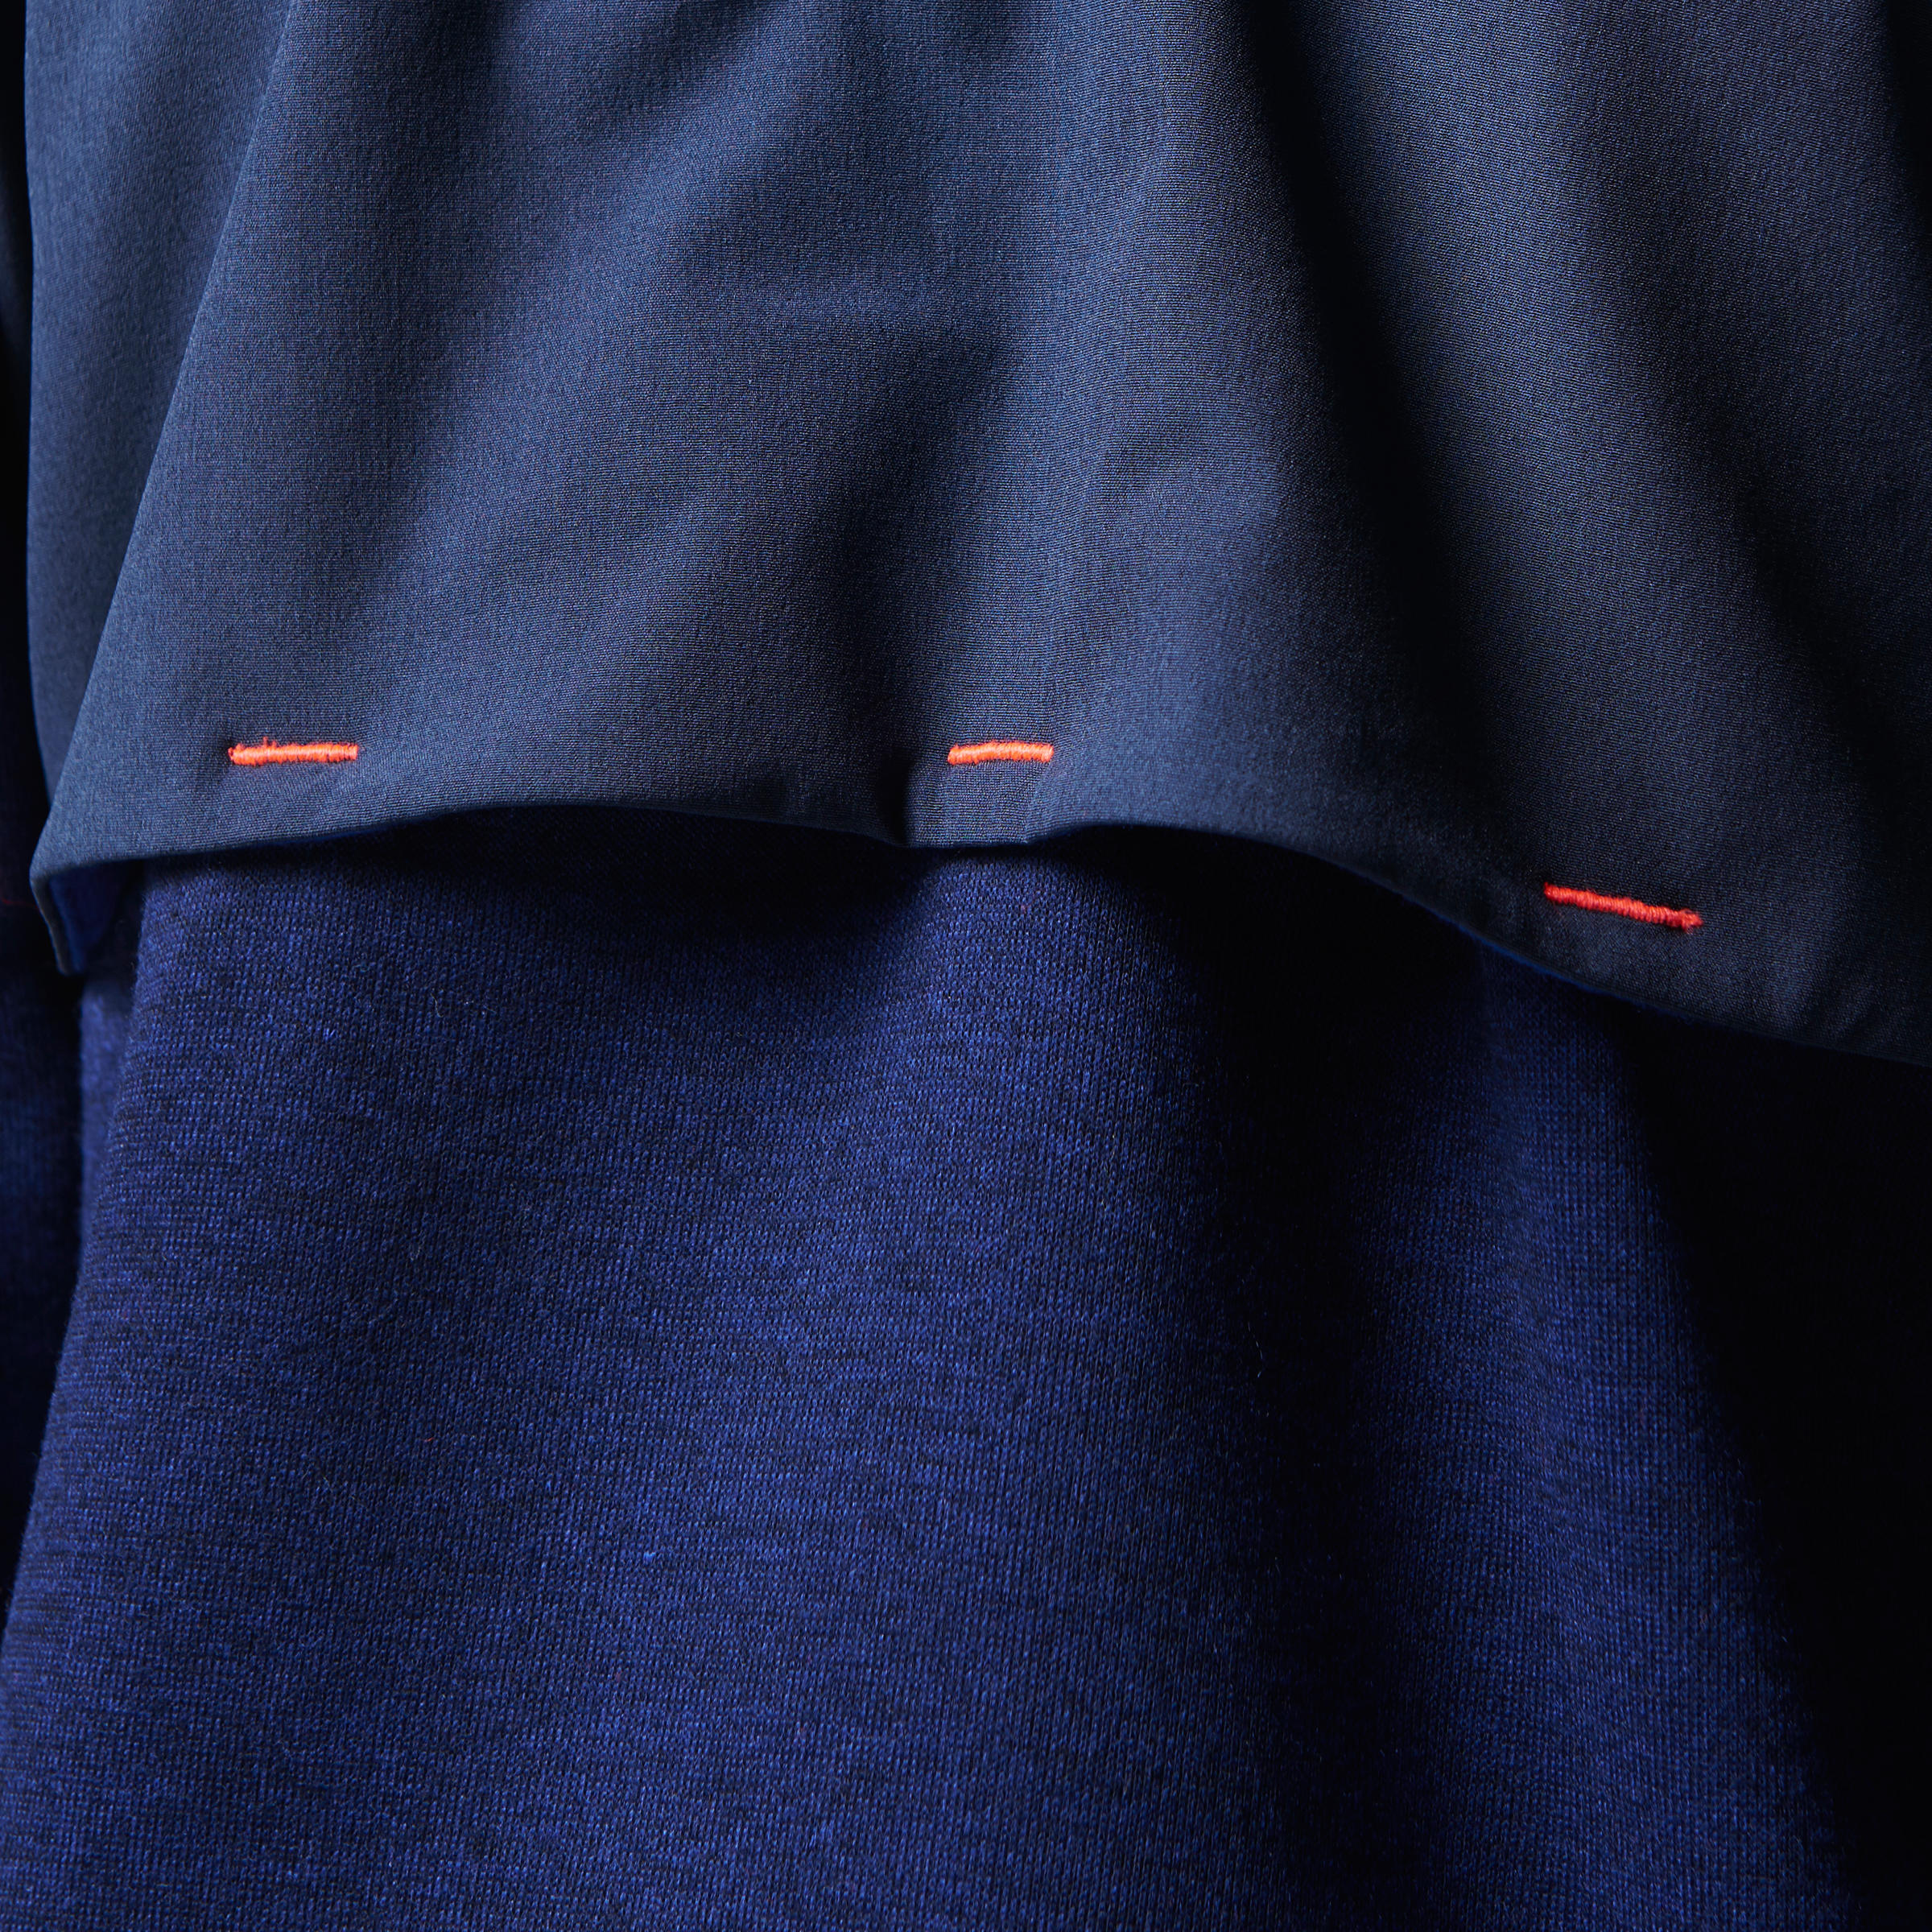 Elio Children's Running Hooded Jersey - Blue/Orange
 15/15